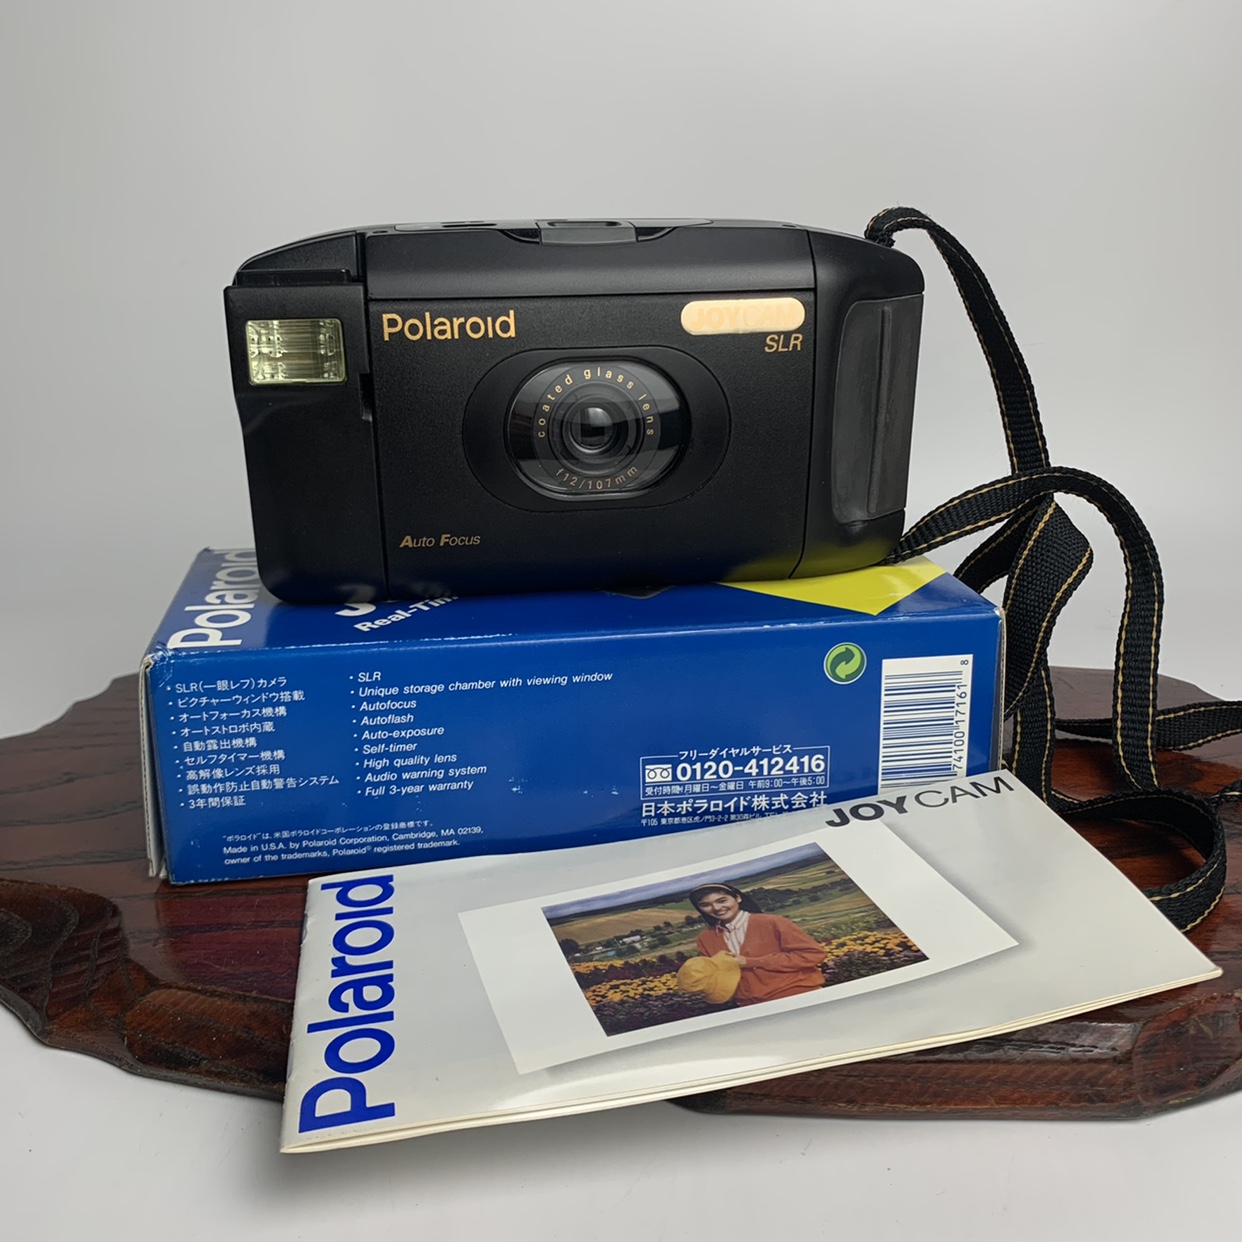 中古美国产 宝丽来Polarold joycam 95Film拍立得相机 箱说齐全